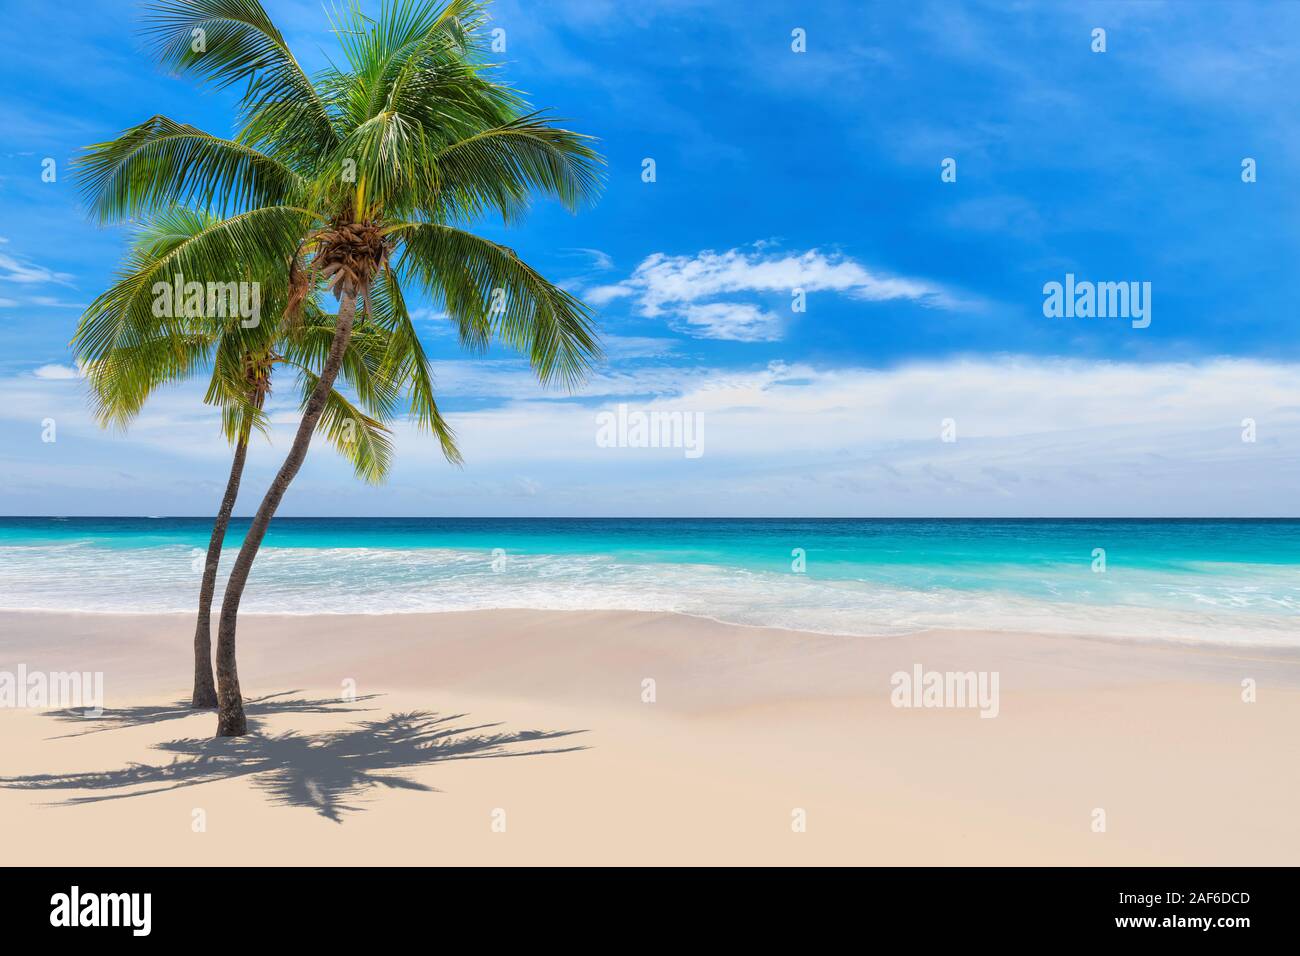 Spiaggia caraibica con palme da cocco e mare turchese Foto Stock